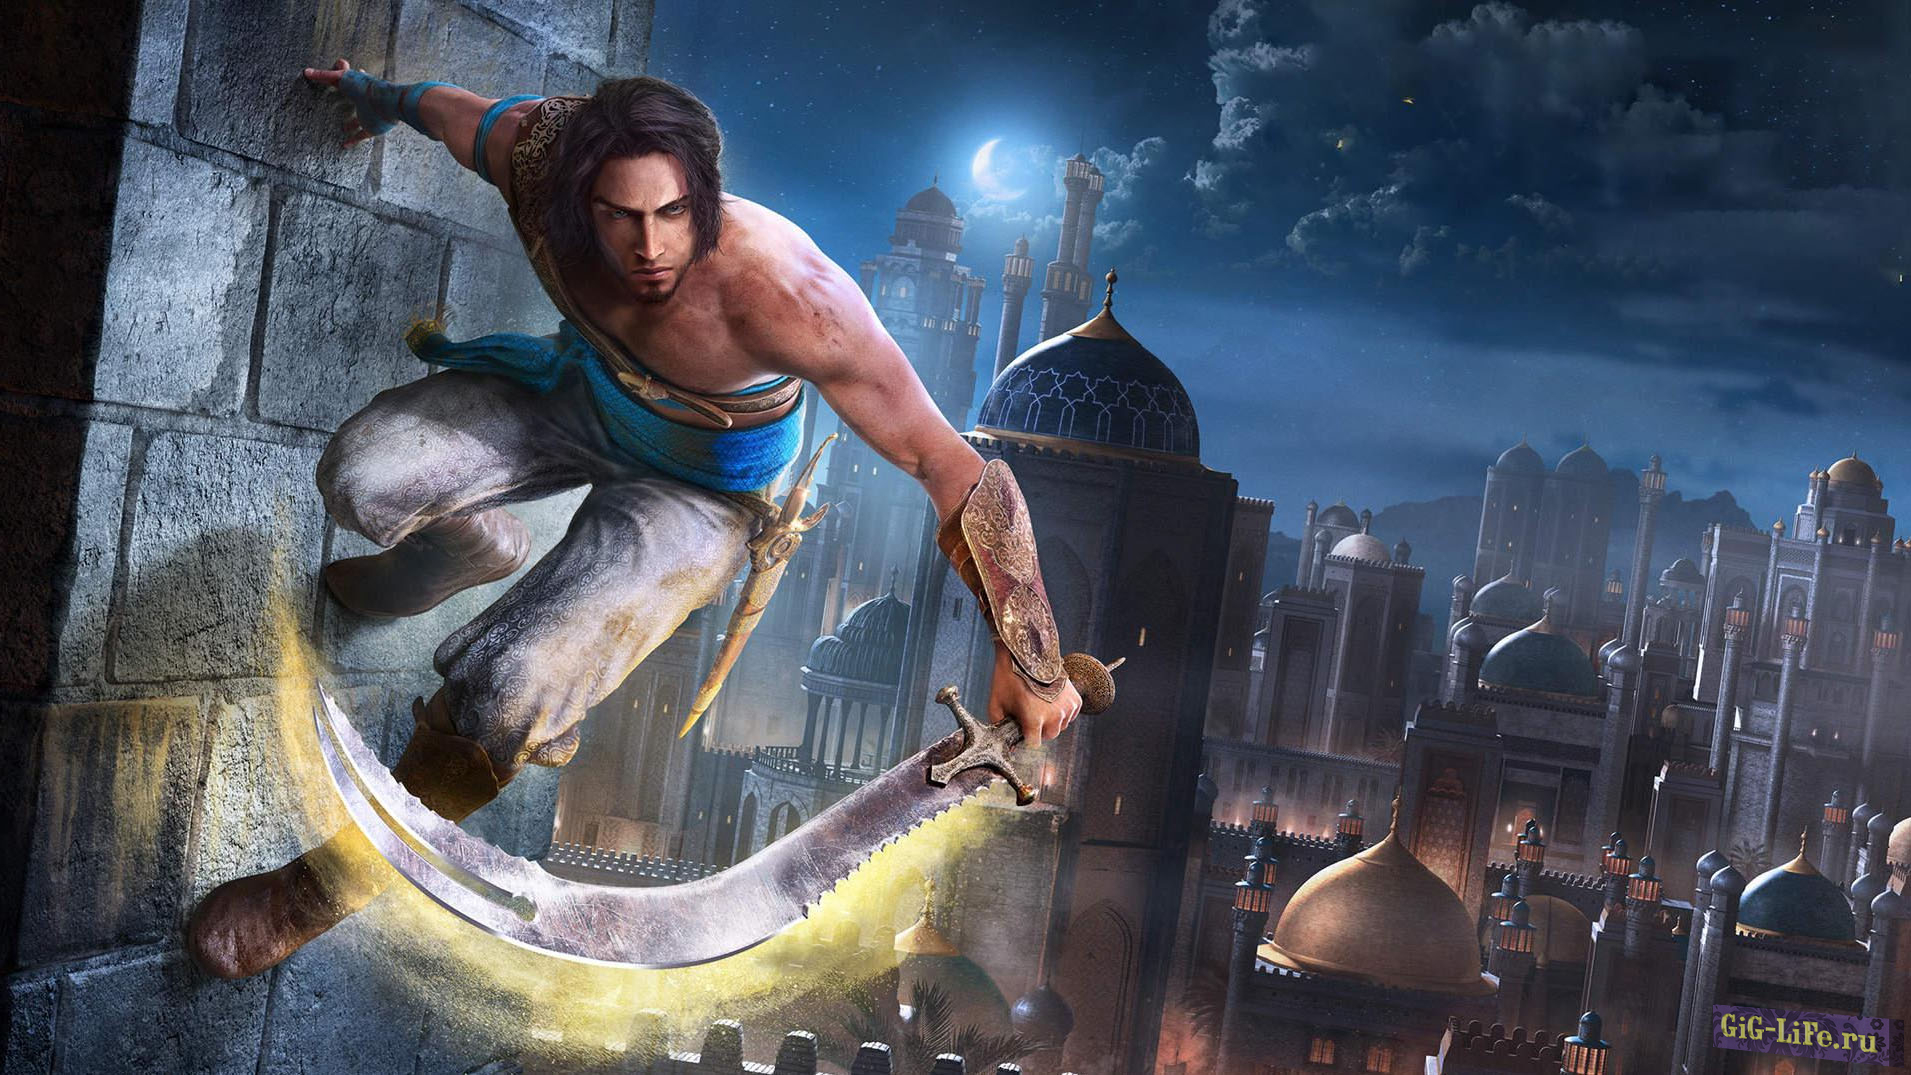 Prince of Persia — Руководитель ремейка пообещал улучшить игру к релизу и показал скриншот из нового билда игры